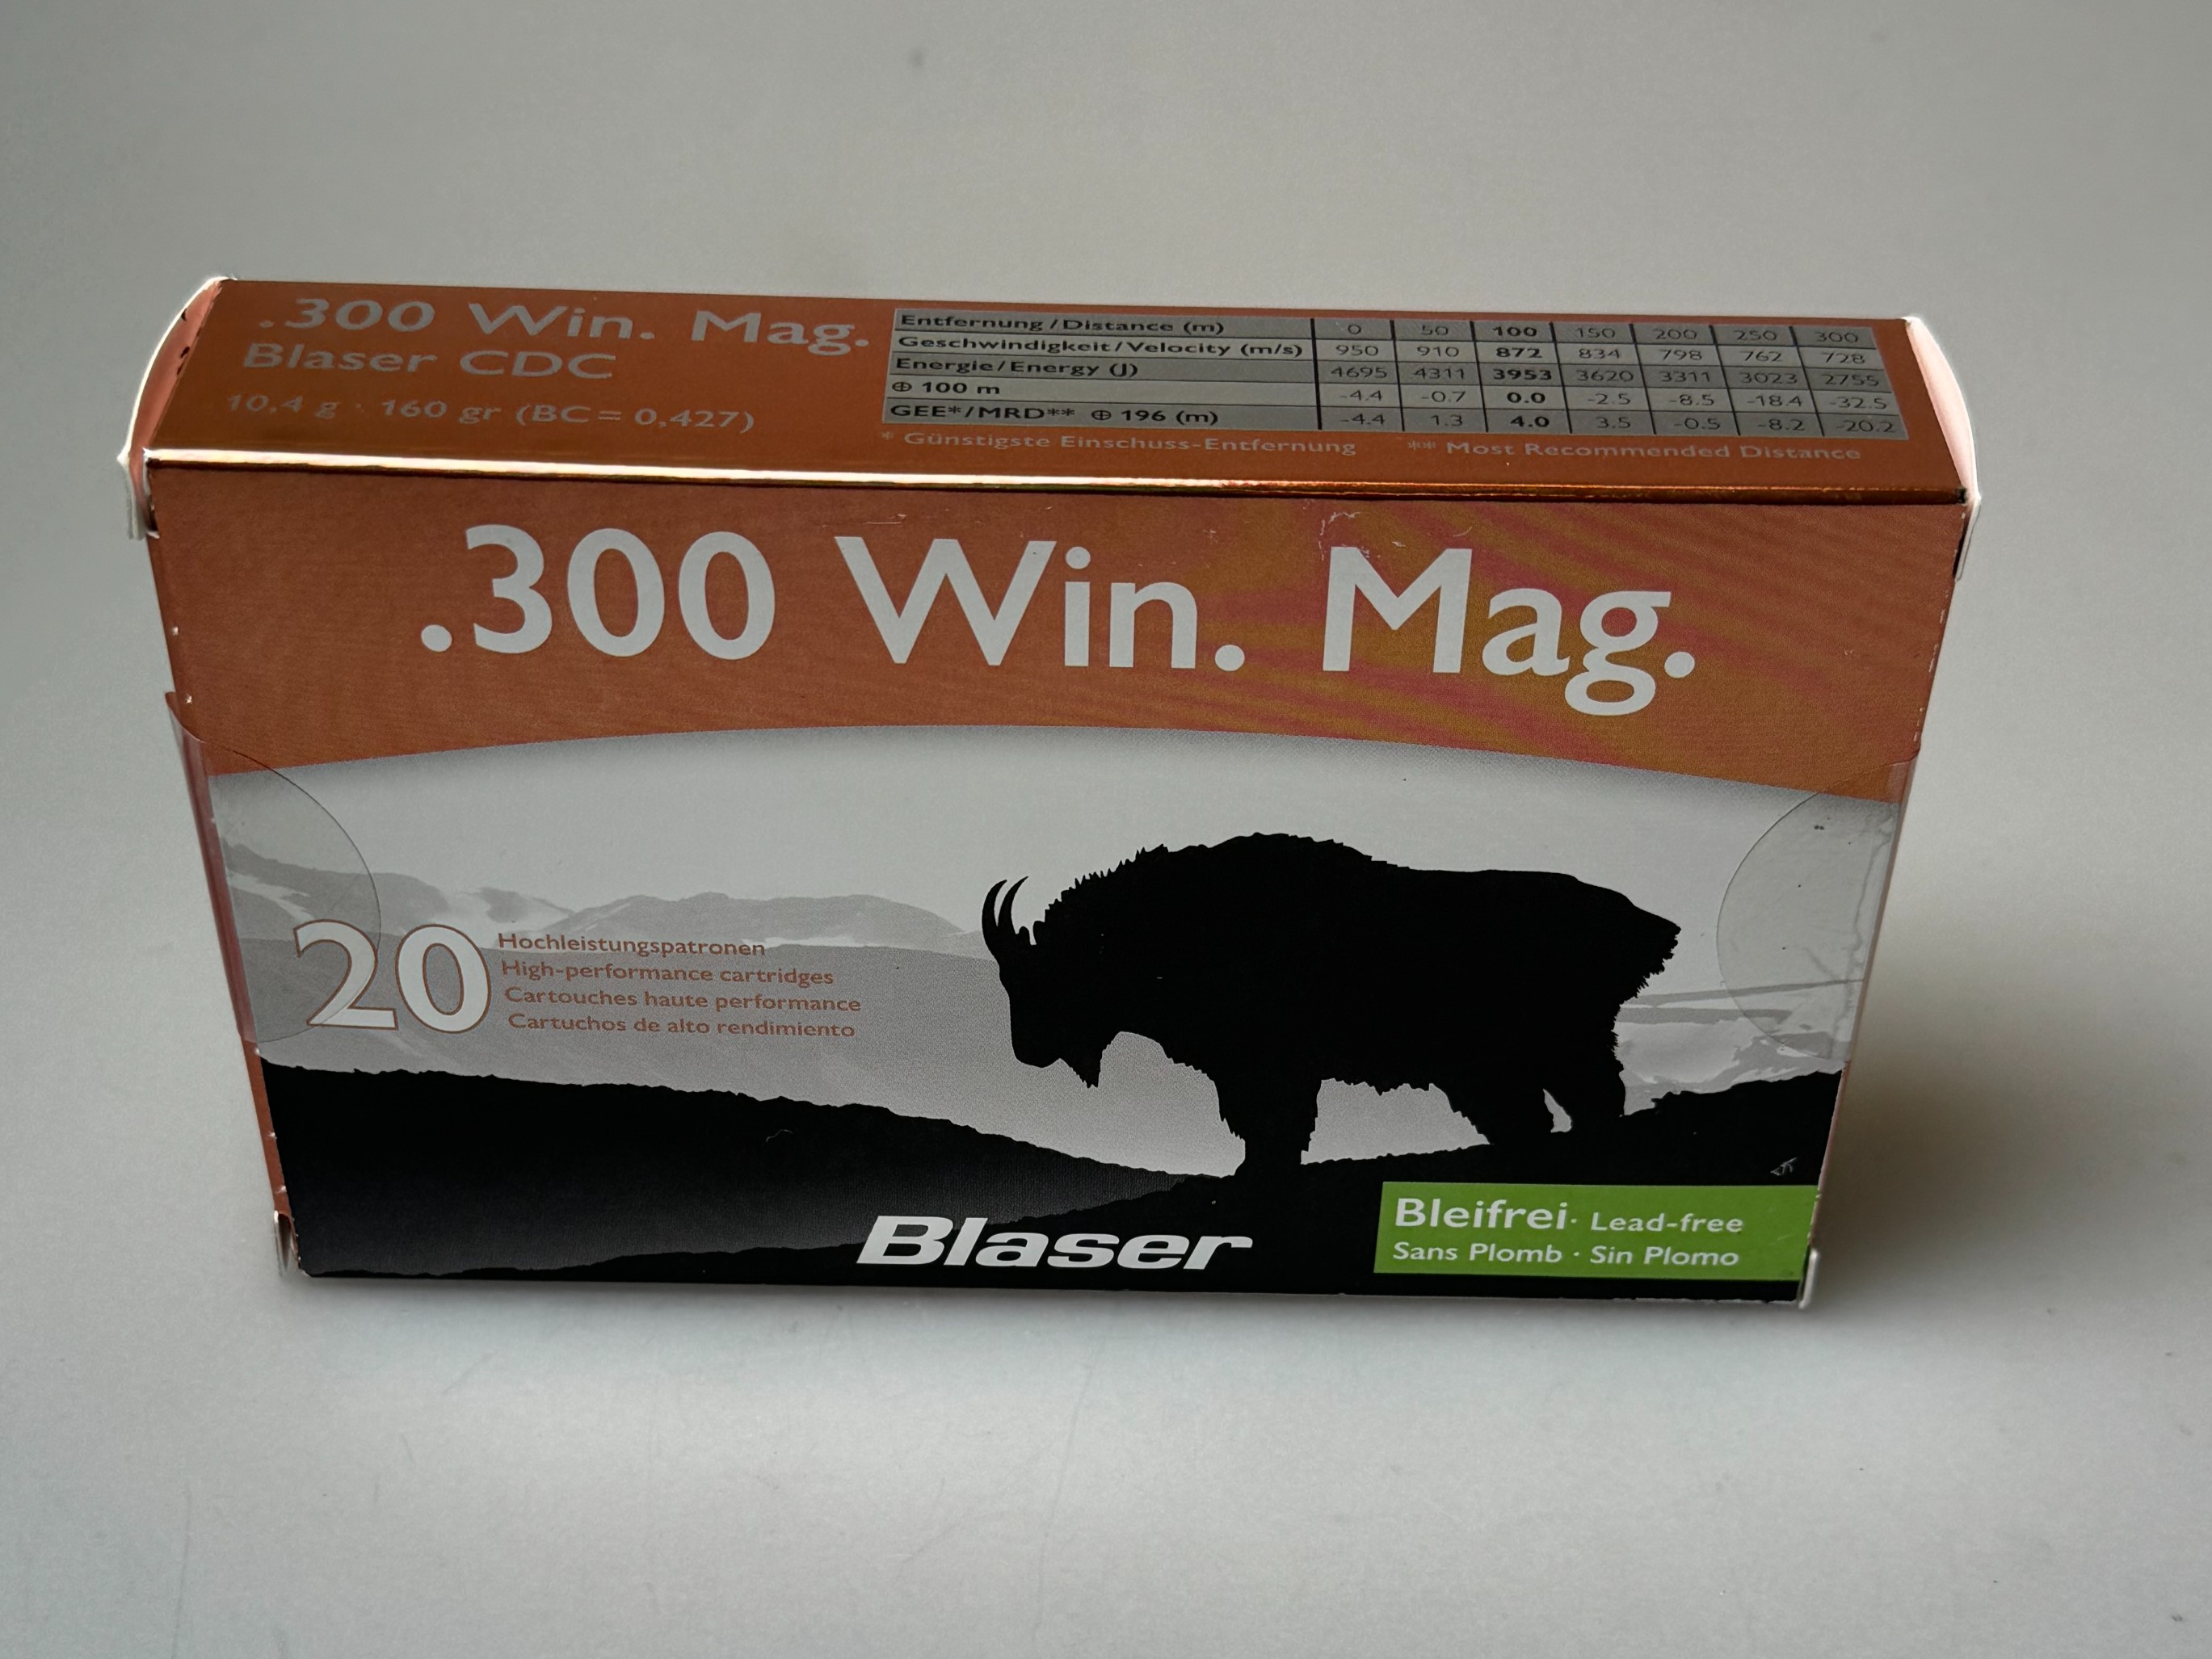 Munition Blaser CDC 10.4g .300 Win. Mag.